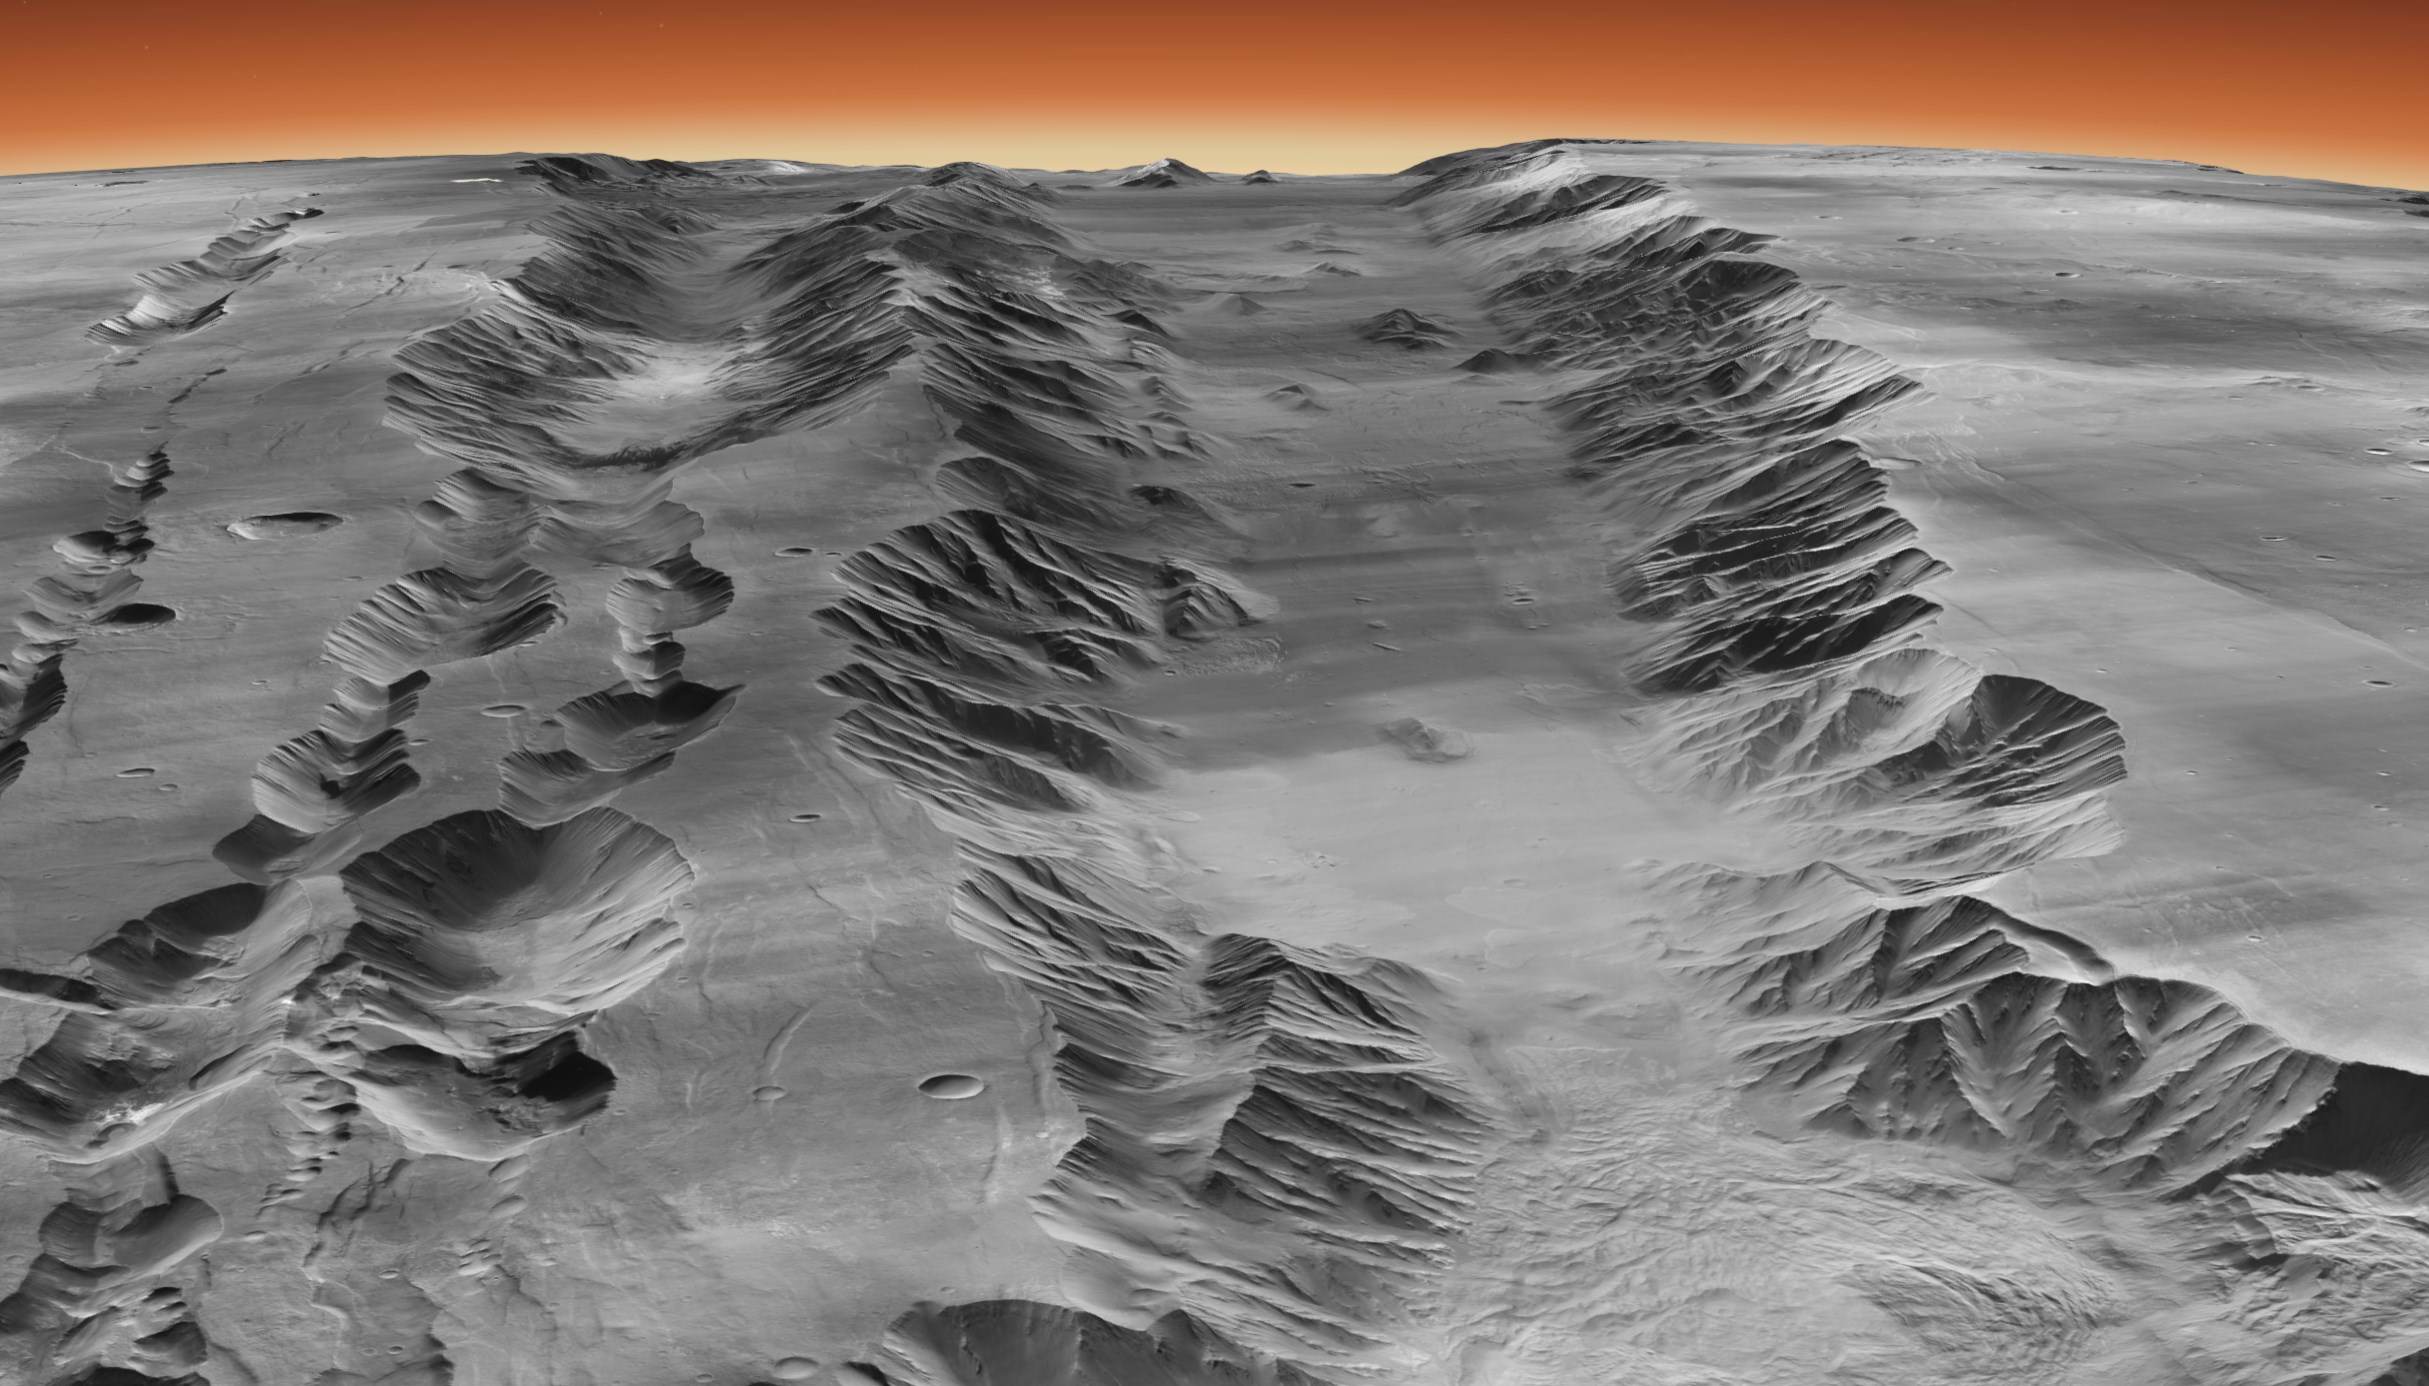 Долина Маринера на Марсе в трехмерном представлении